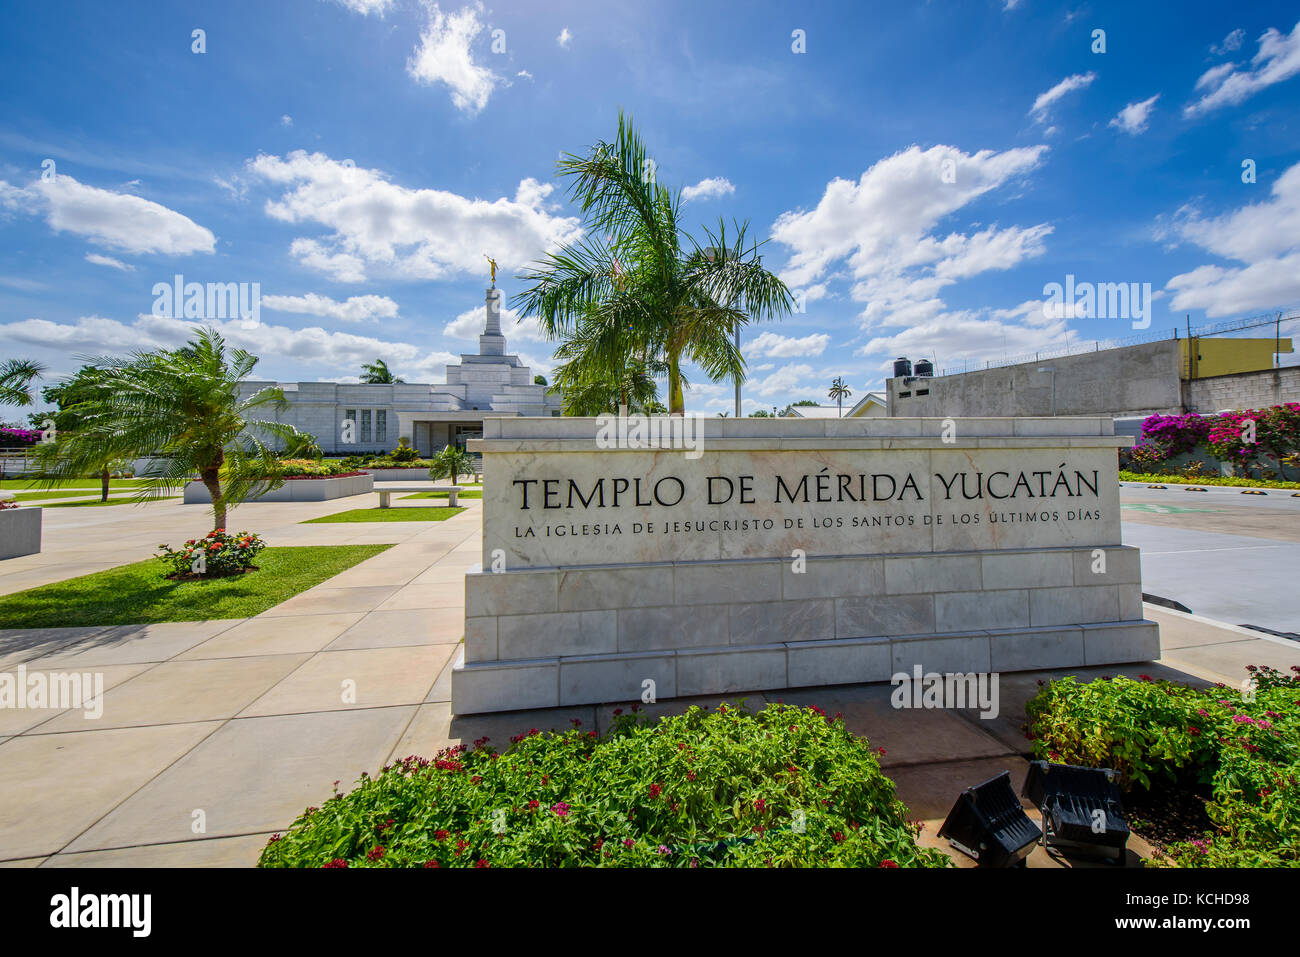 Templo De La Iglesia De Jesucristo De Los Santos De Los Últimos Días,mormon  temple in Merida, Yucatan (Mexico, Central America Stock Photo - Alamy